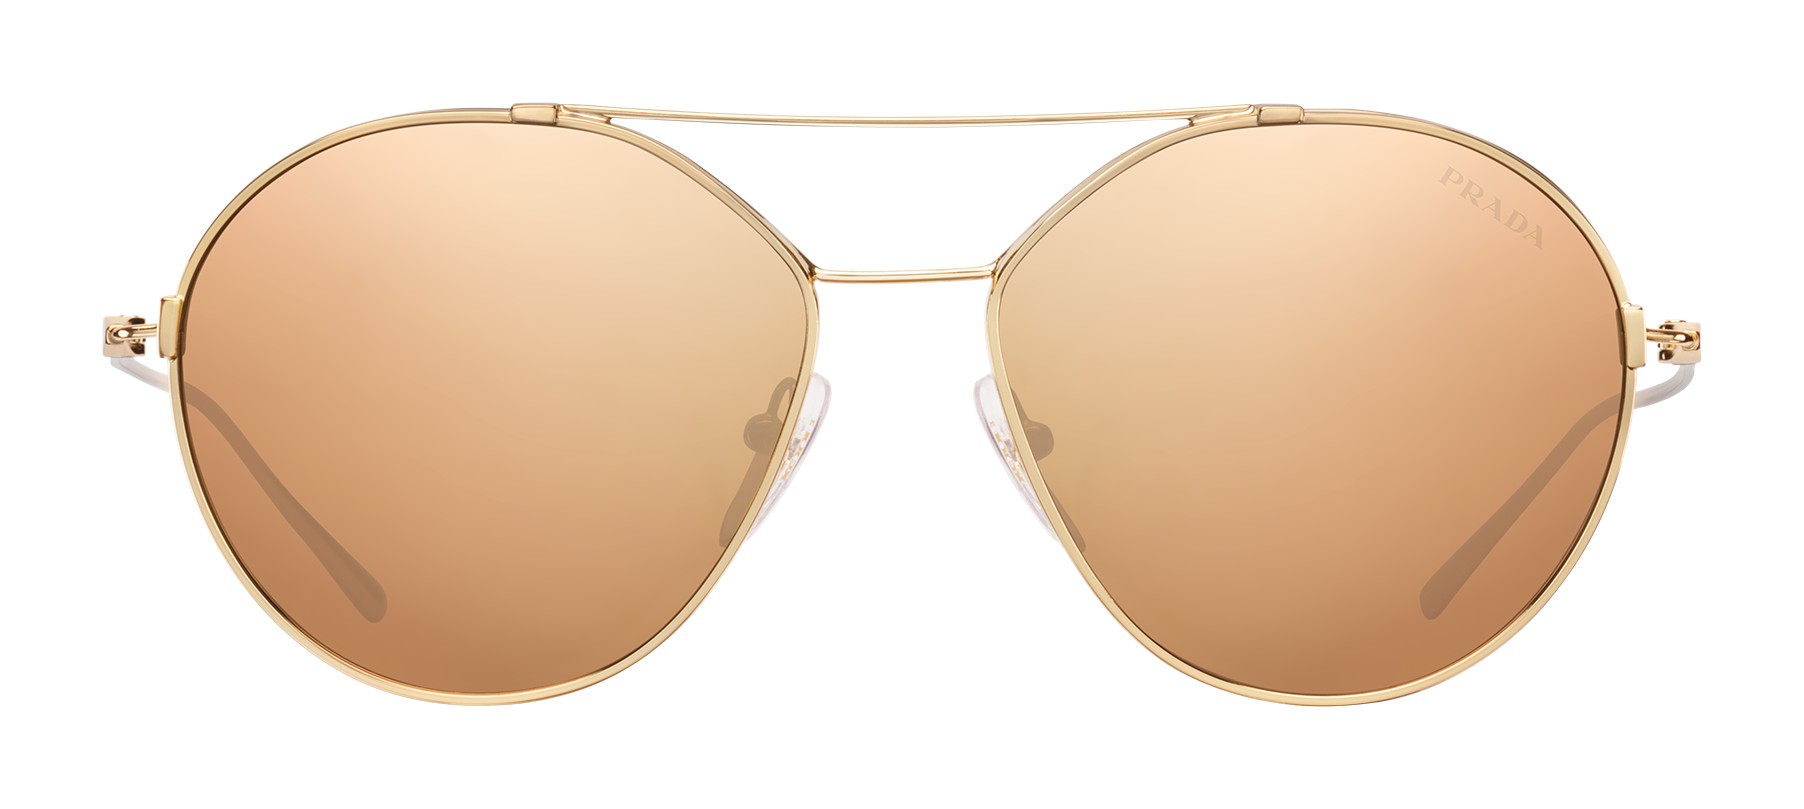 prada gold aviator sunglasses